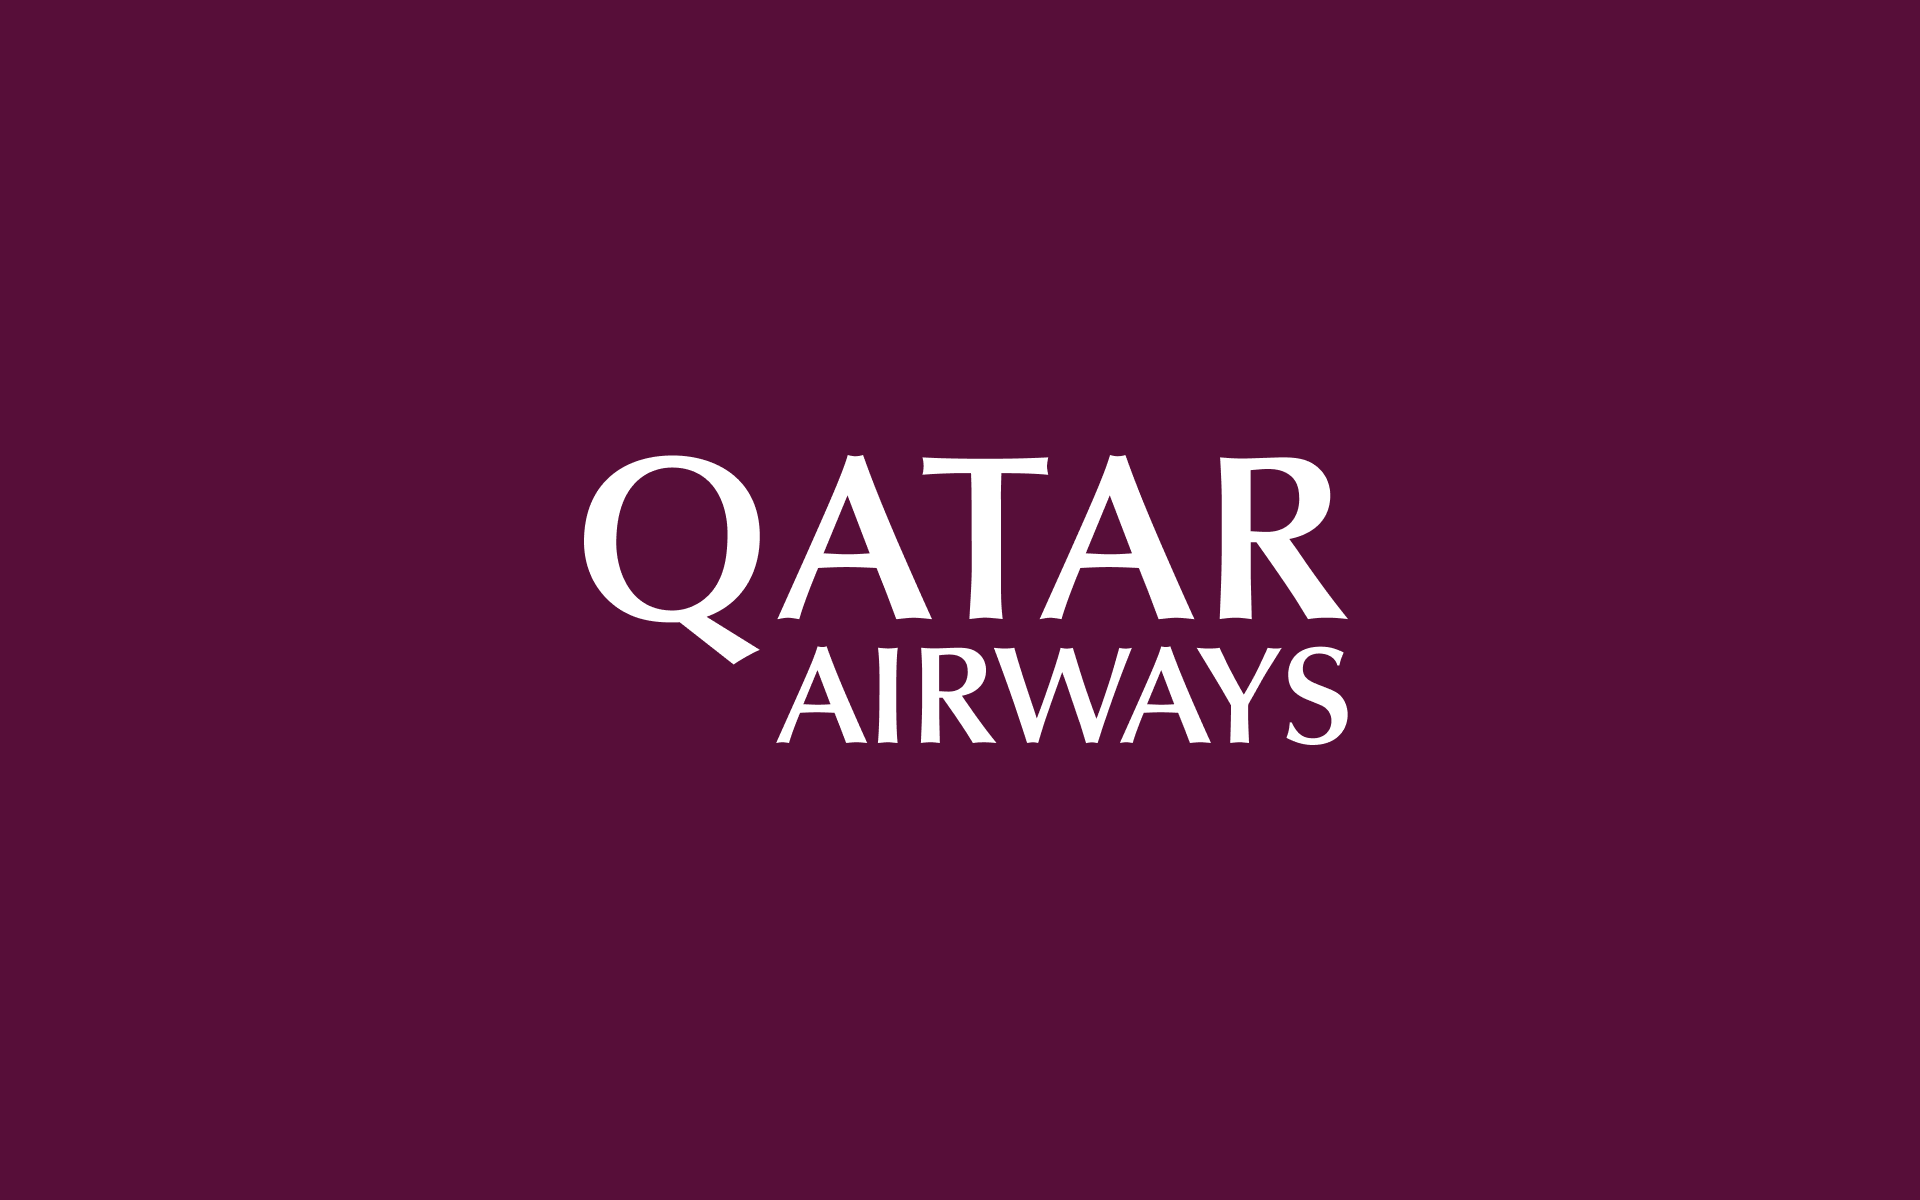 Qatar Airways Indonesia - Book Flights with a World-class Airline | Qatar Airways